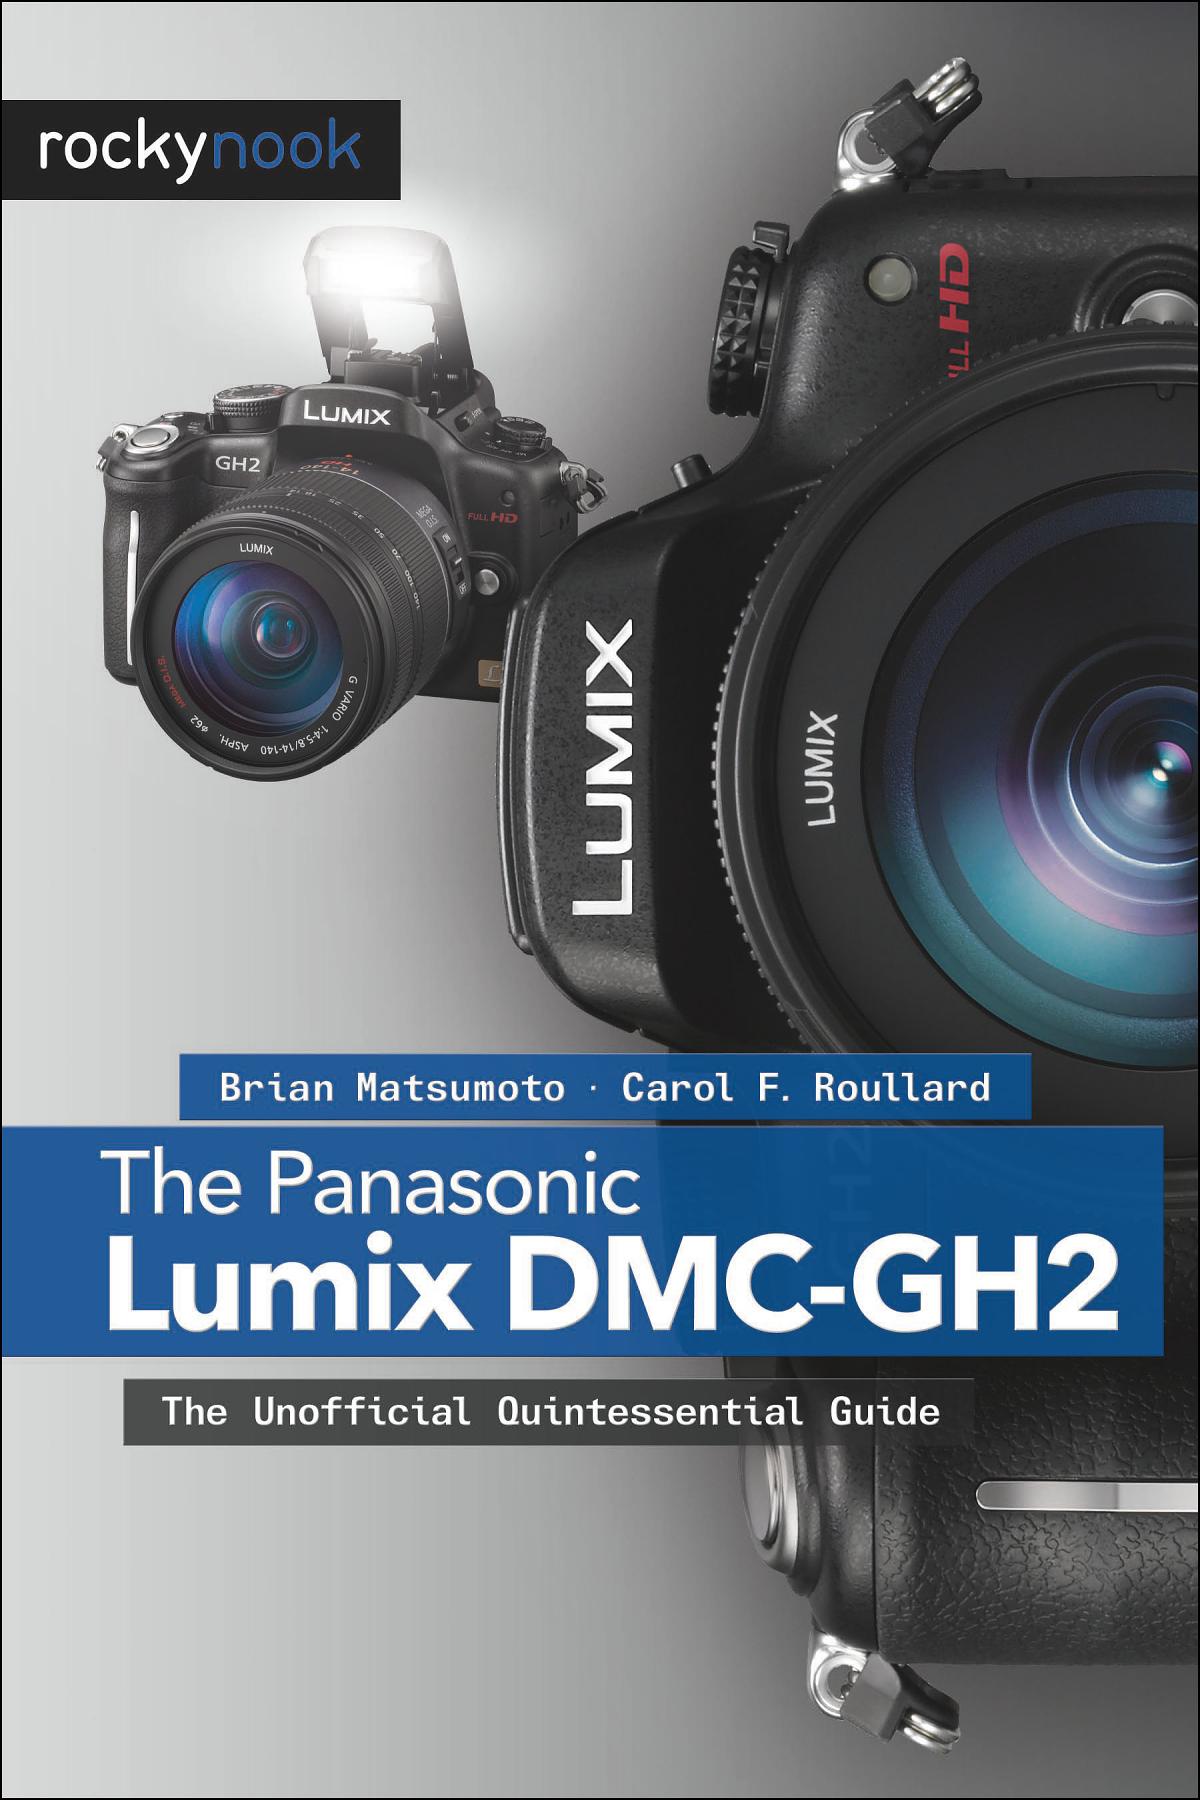 noodsituatie enkel en alleen gevechten The Panasonic Lumix DMC-GH2 - RockyNook